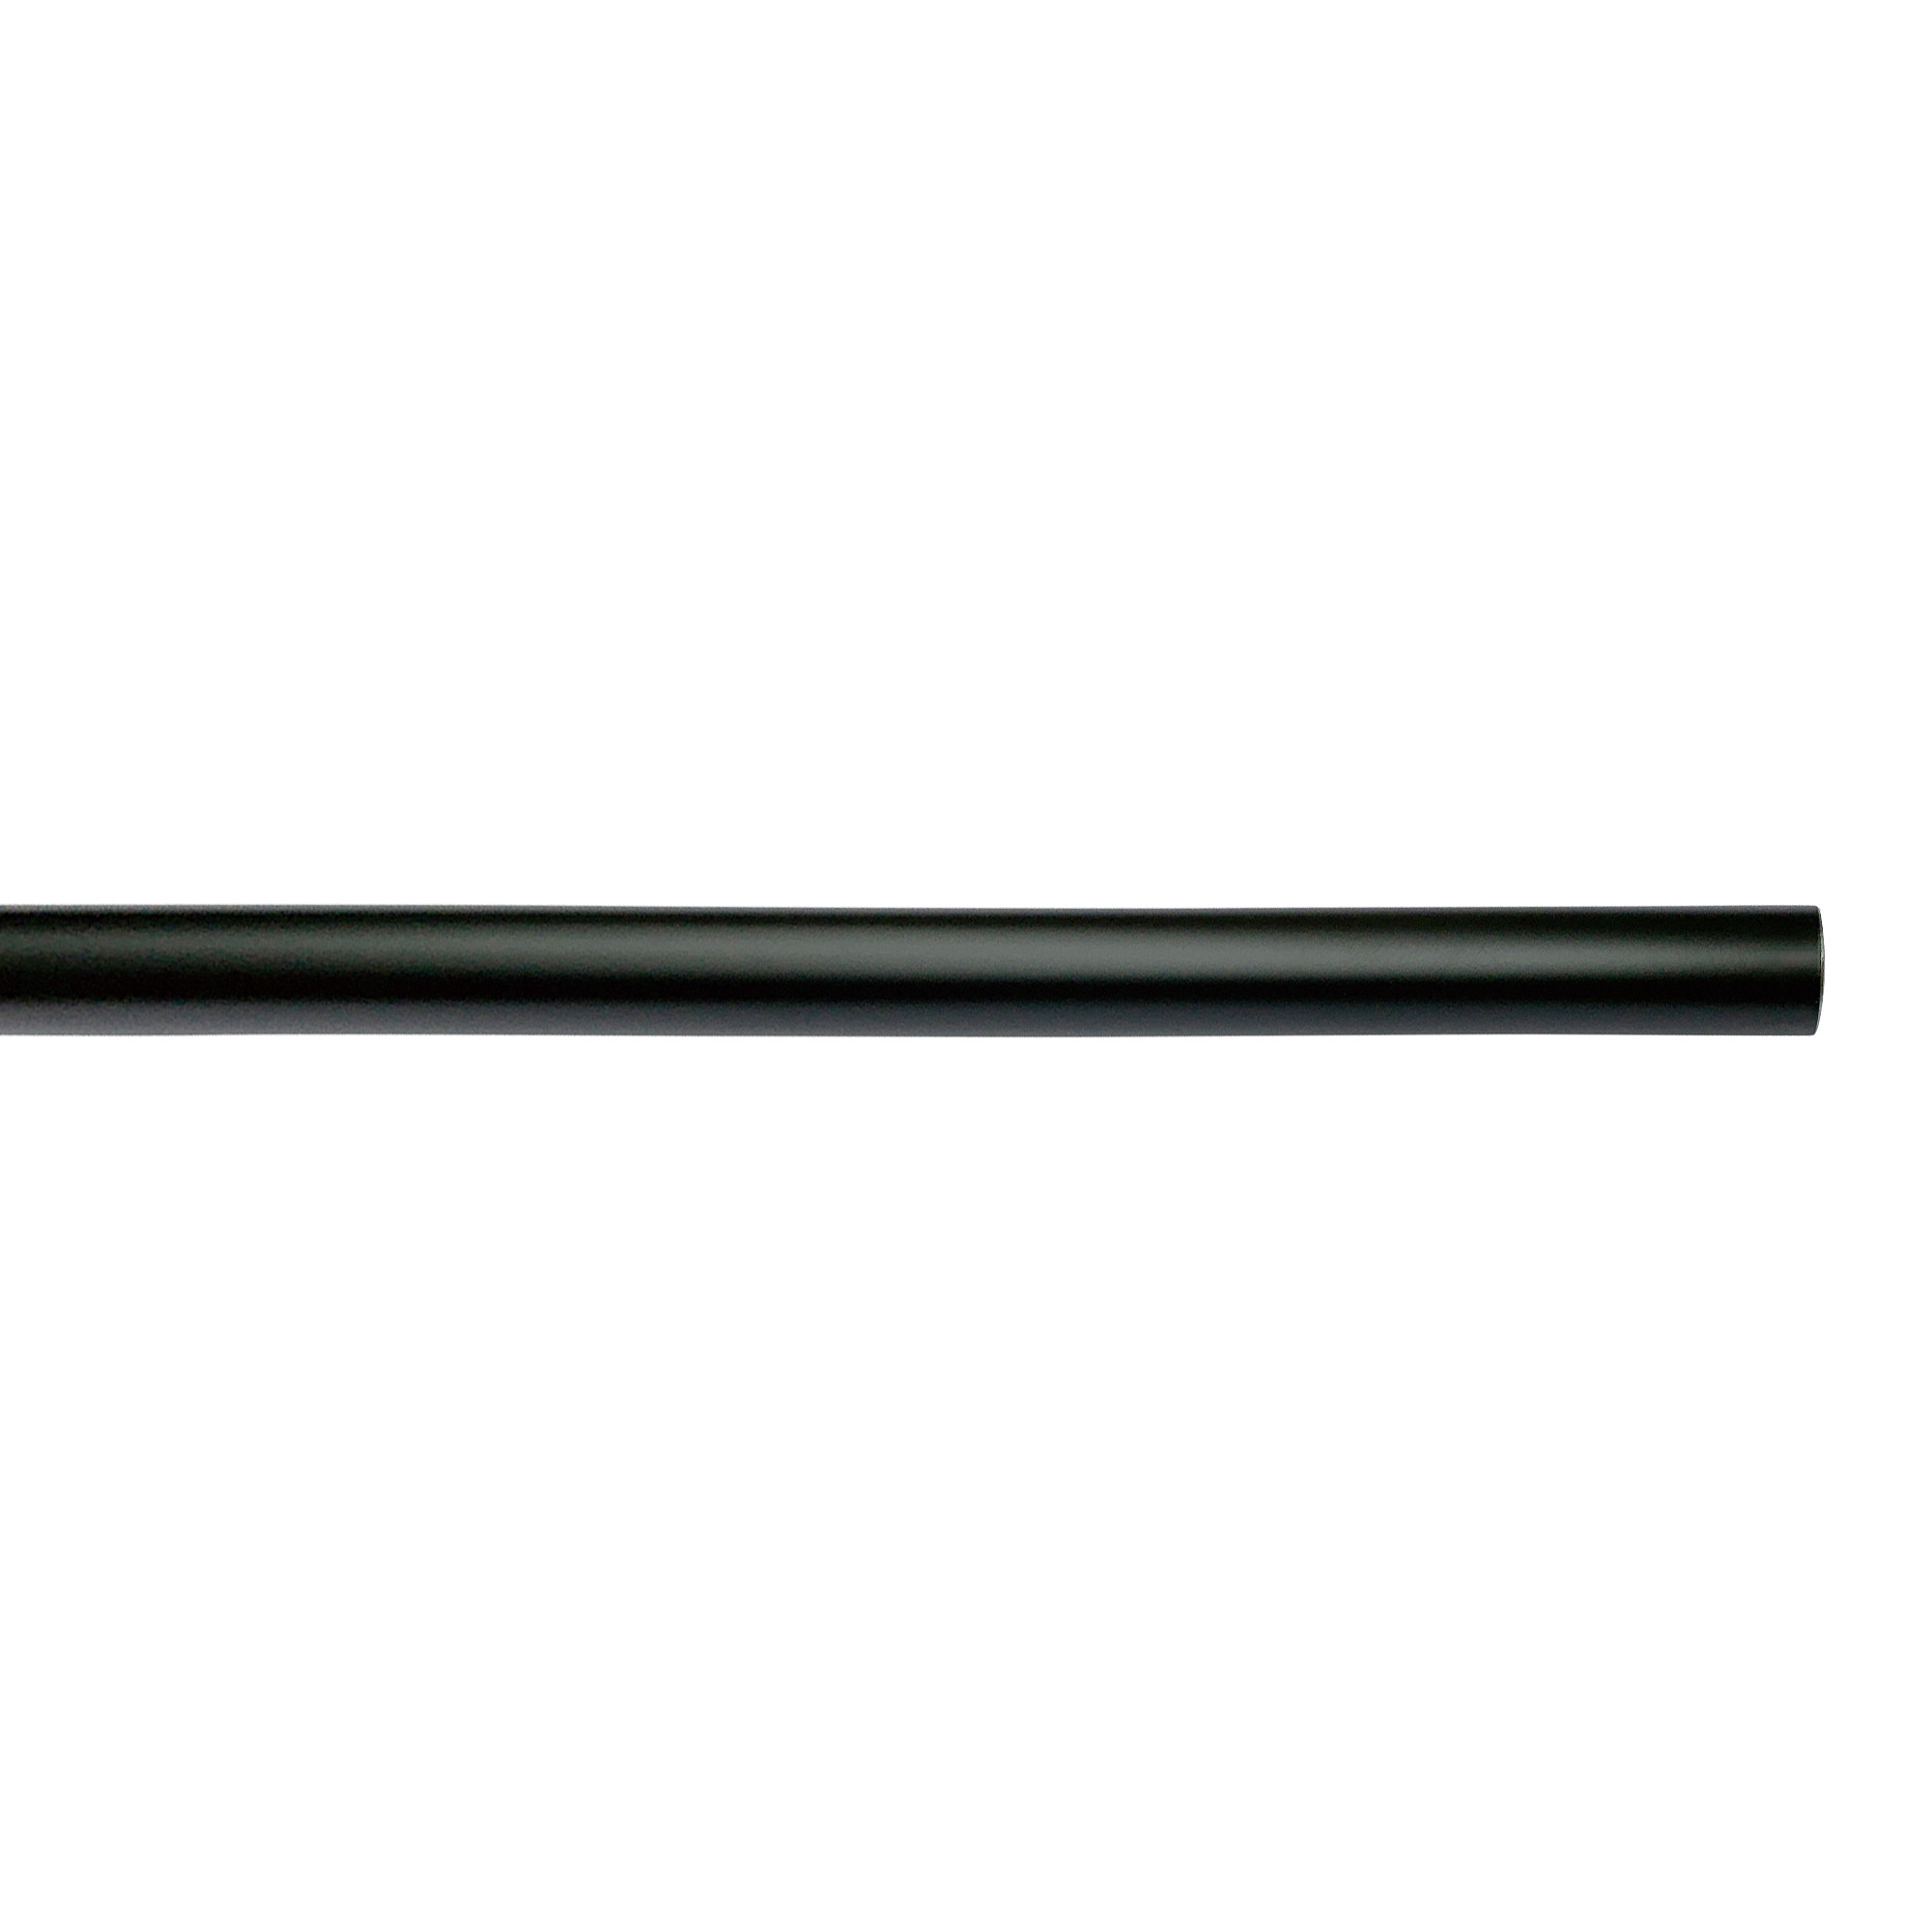 アイアンハンガーパイプ E型-天井吊タイプ H500 ブラック PS-HB008-61-G141 水平パイプは3サイズから2本、それぞれお好きな長さを選択可能です